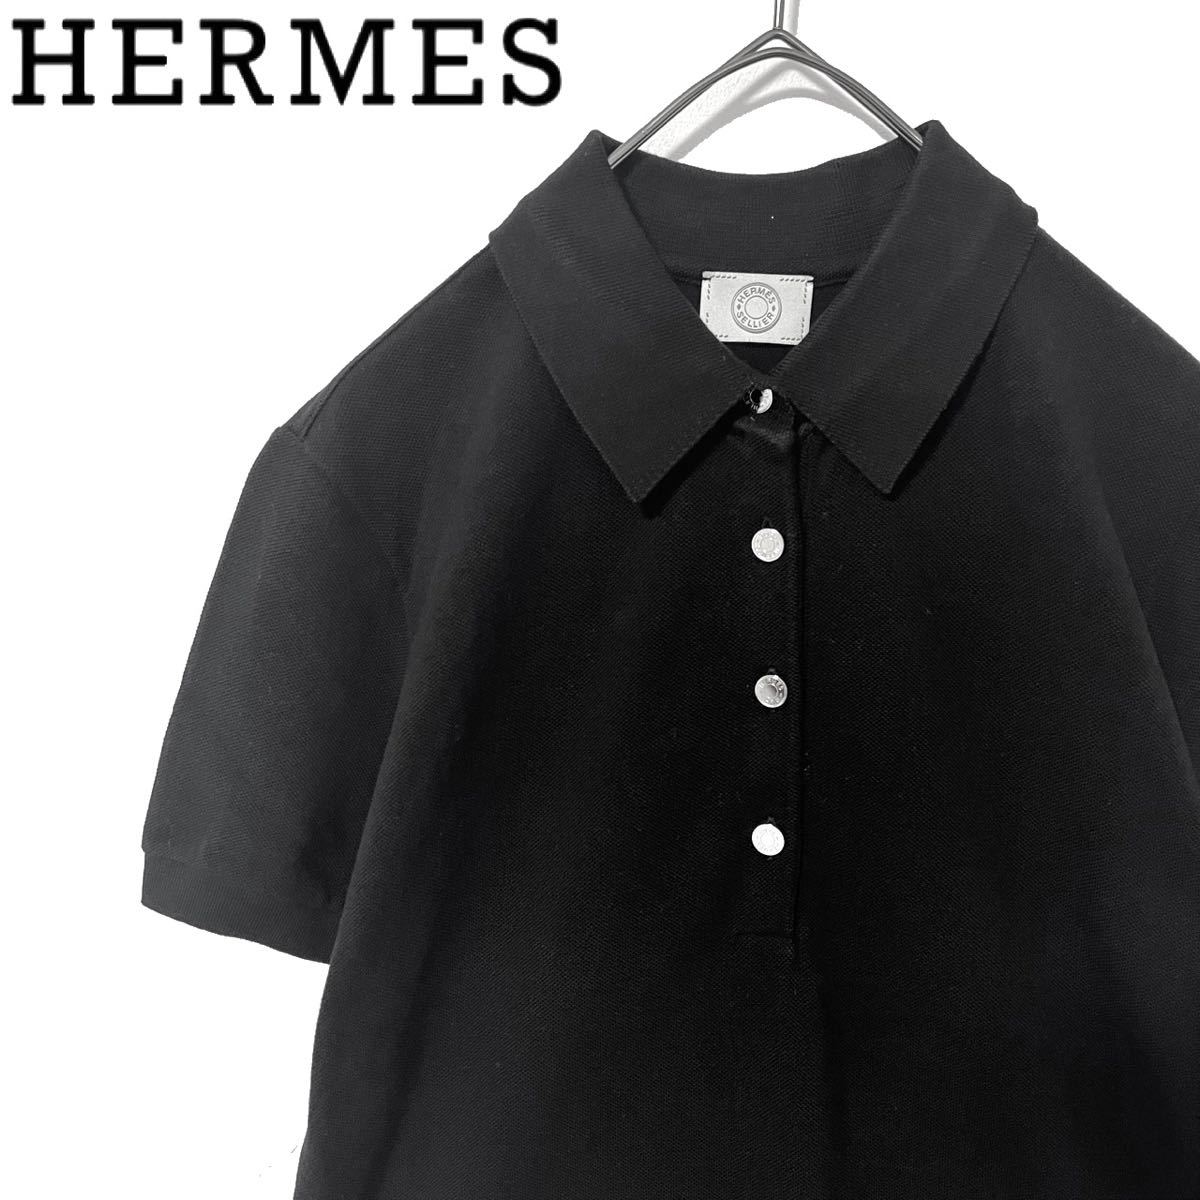 HERMES エルメス セリエ ポロシャツ 半袖 ブラック 黒 レディース M 銀